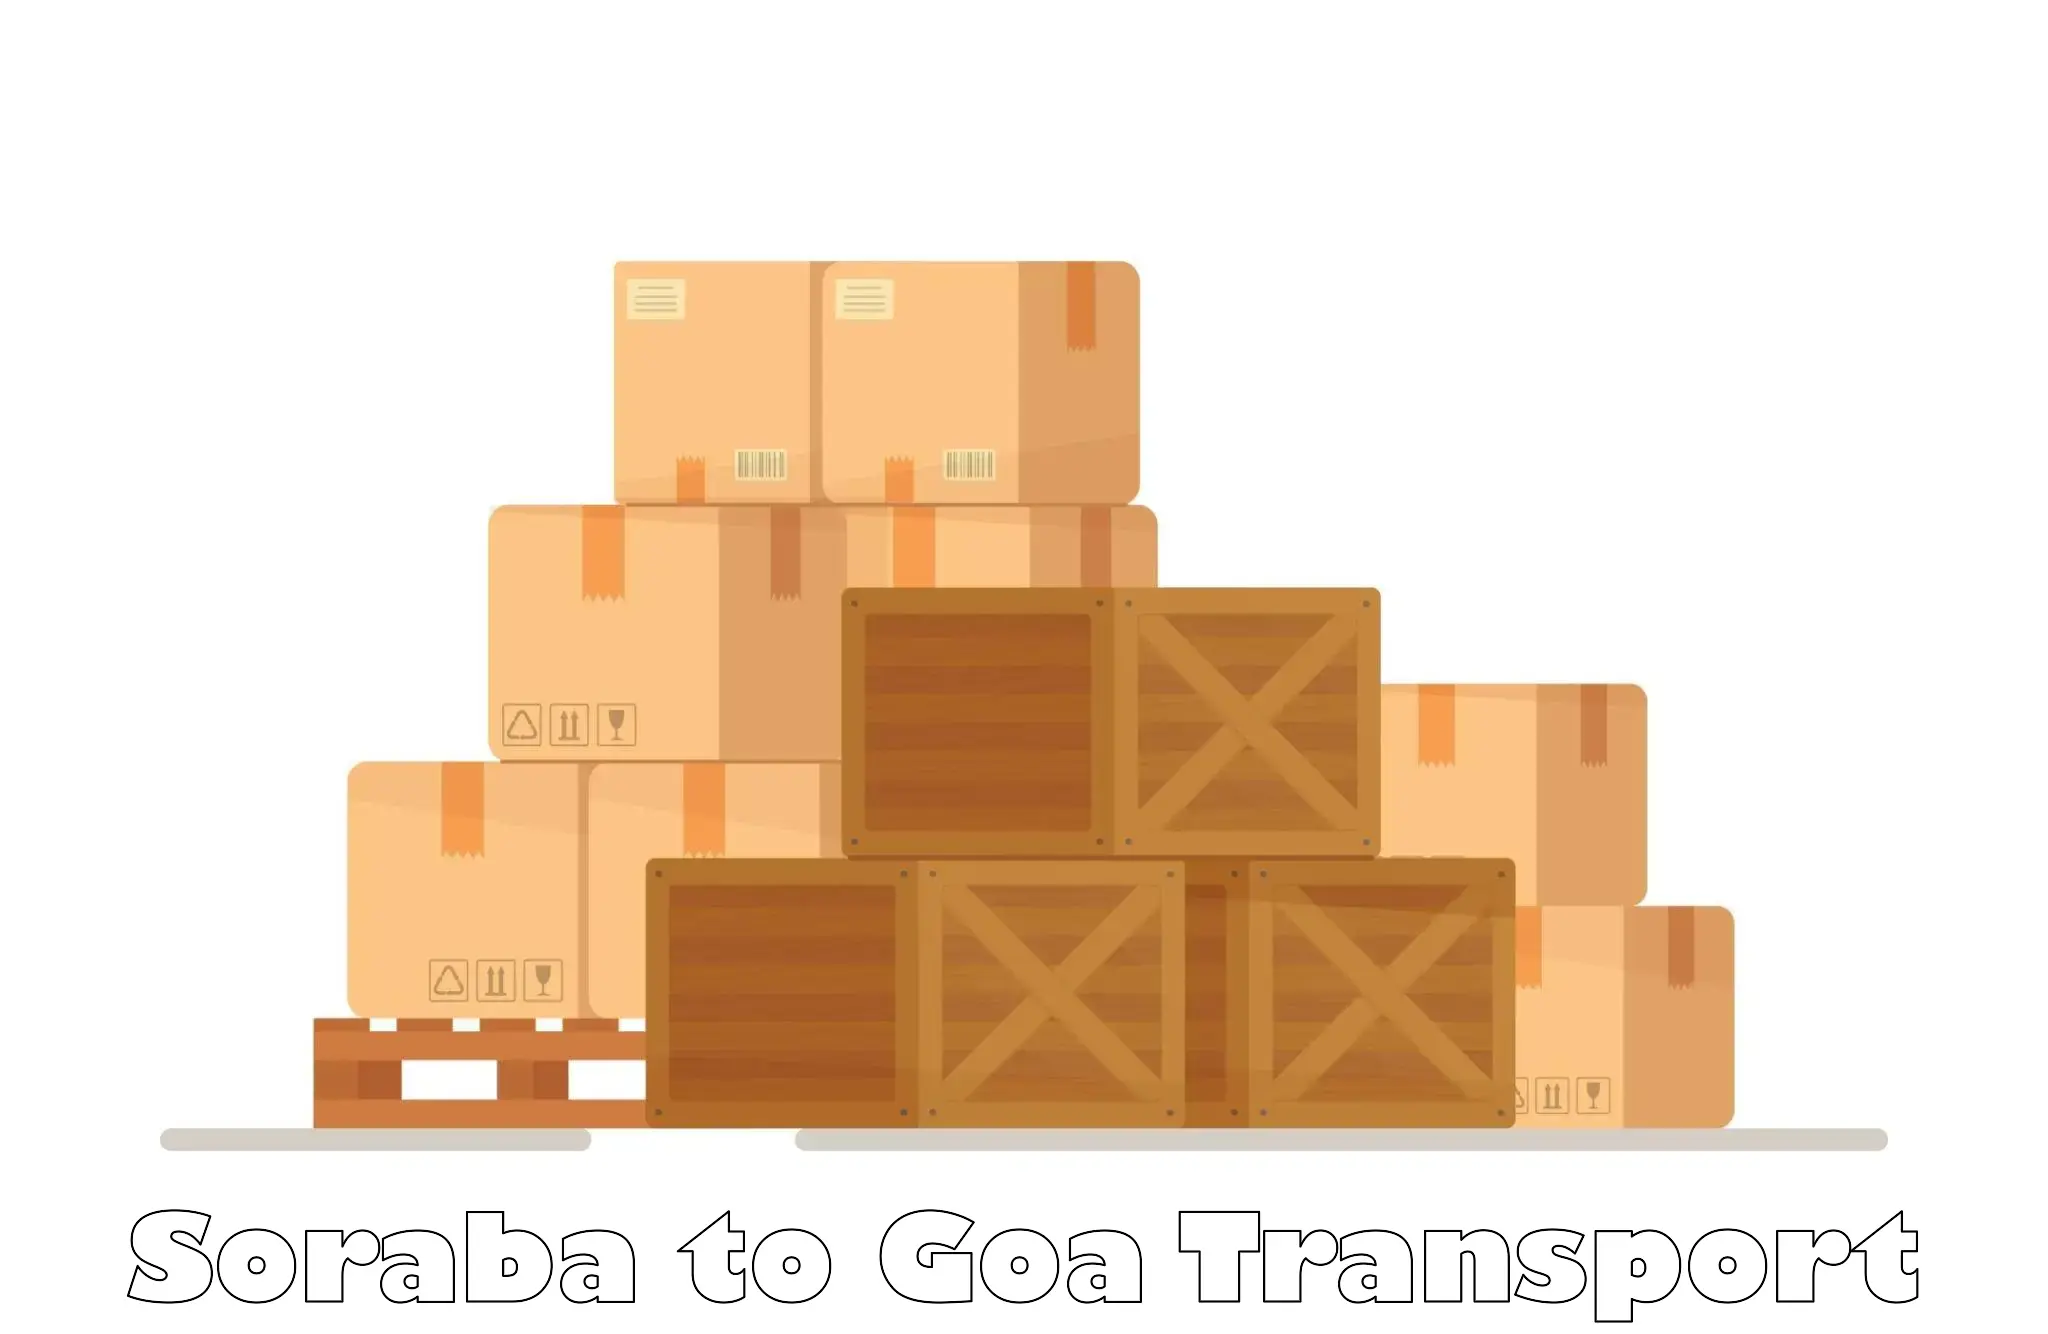 Online transport service in Soraba to Vasco da Gama